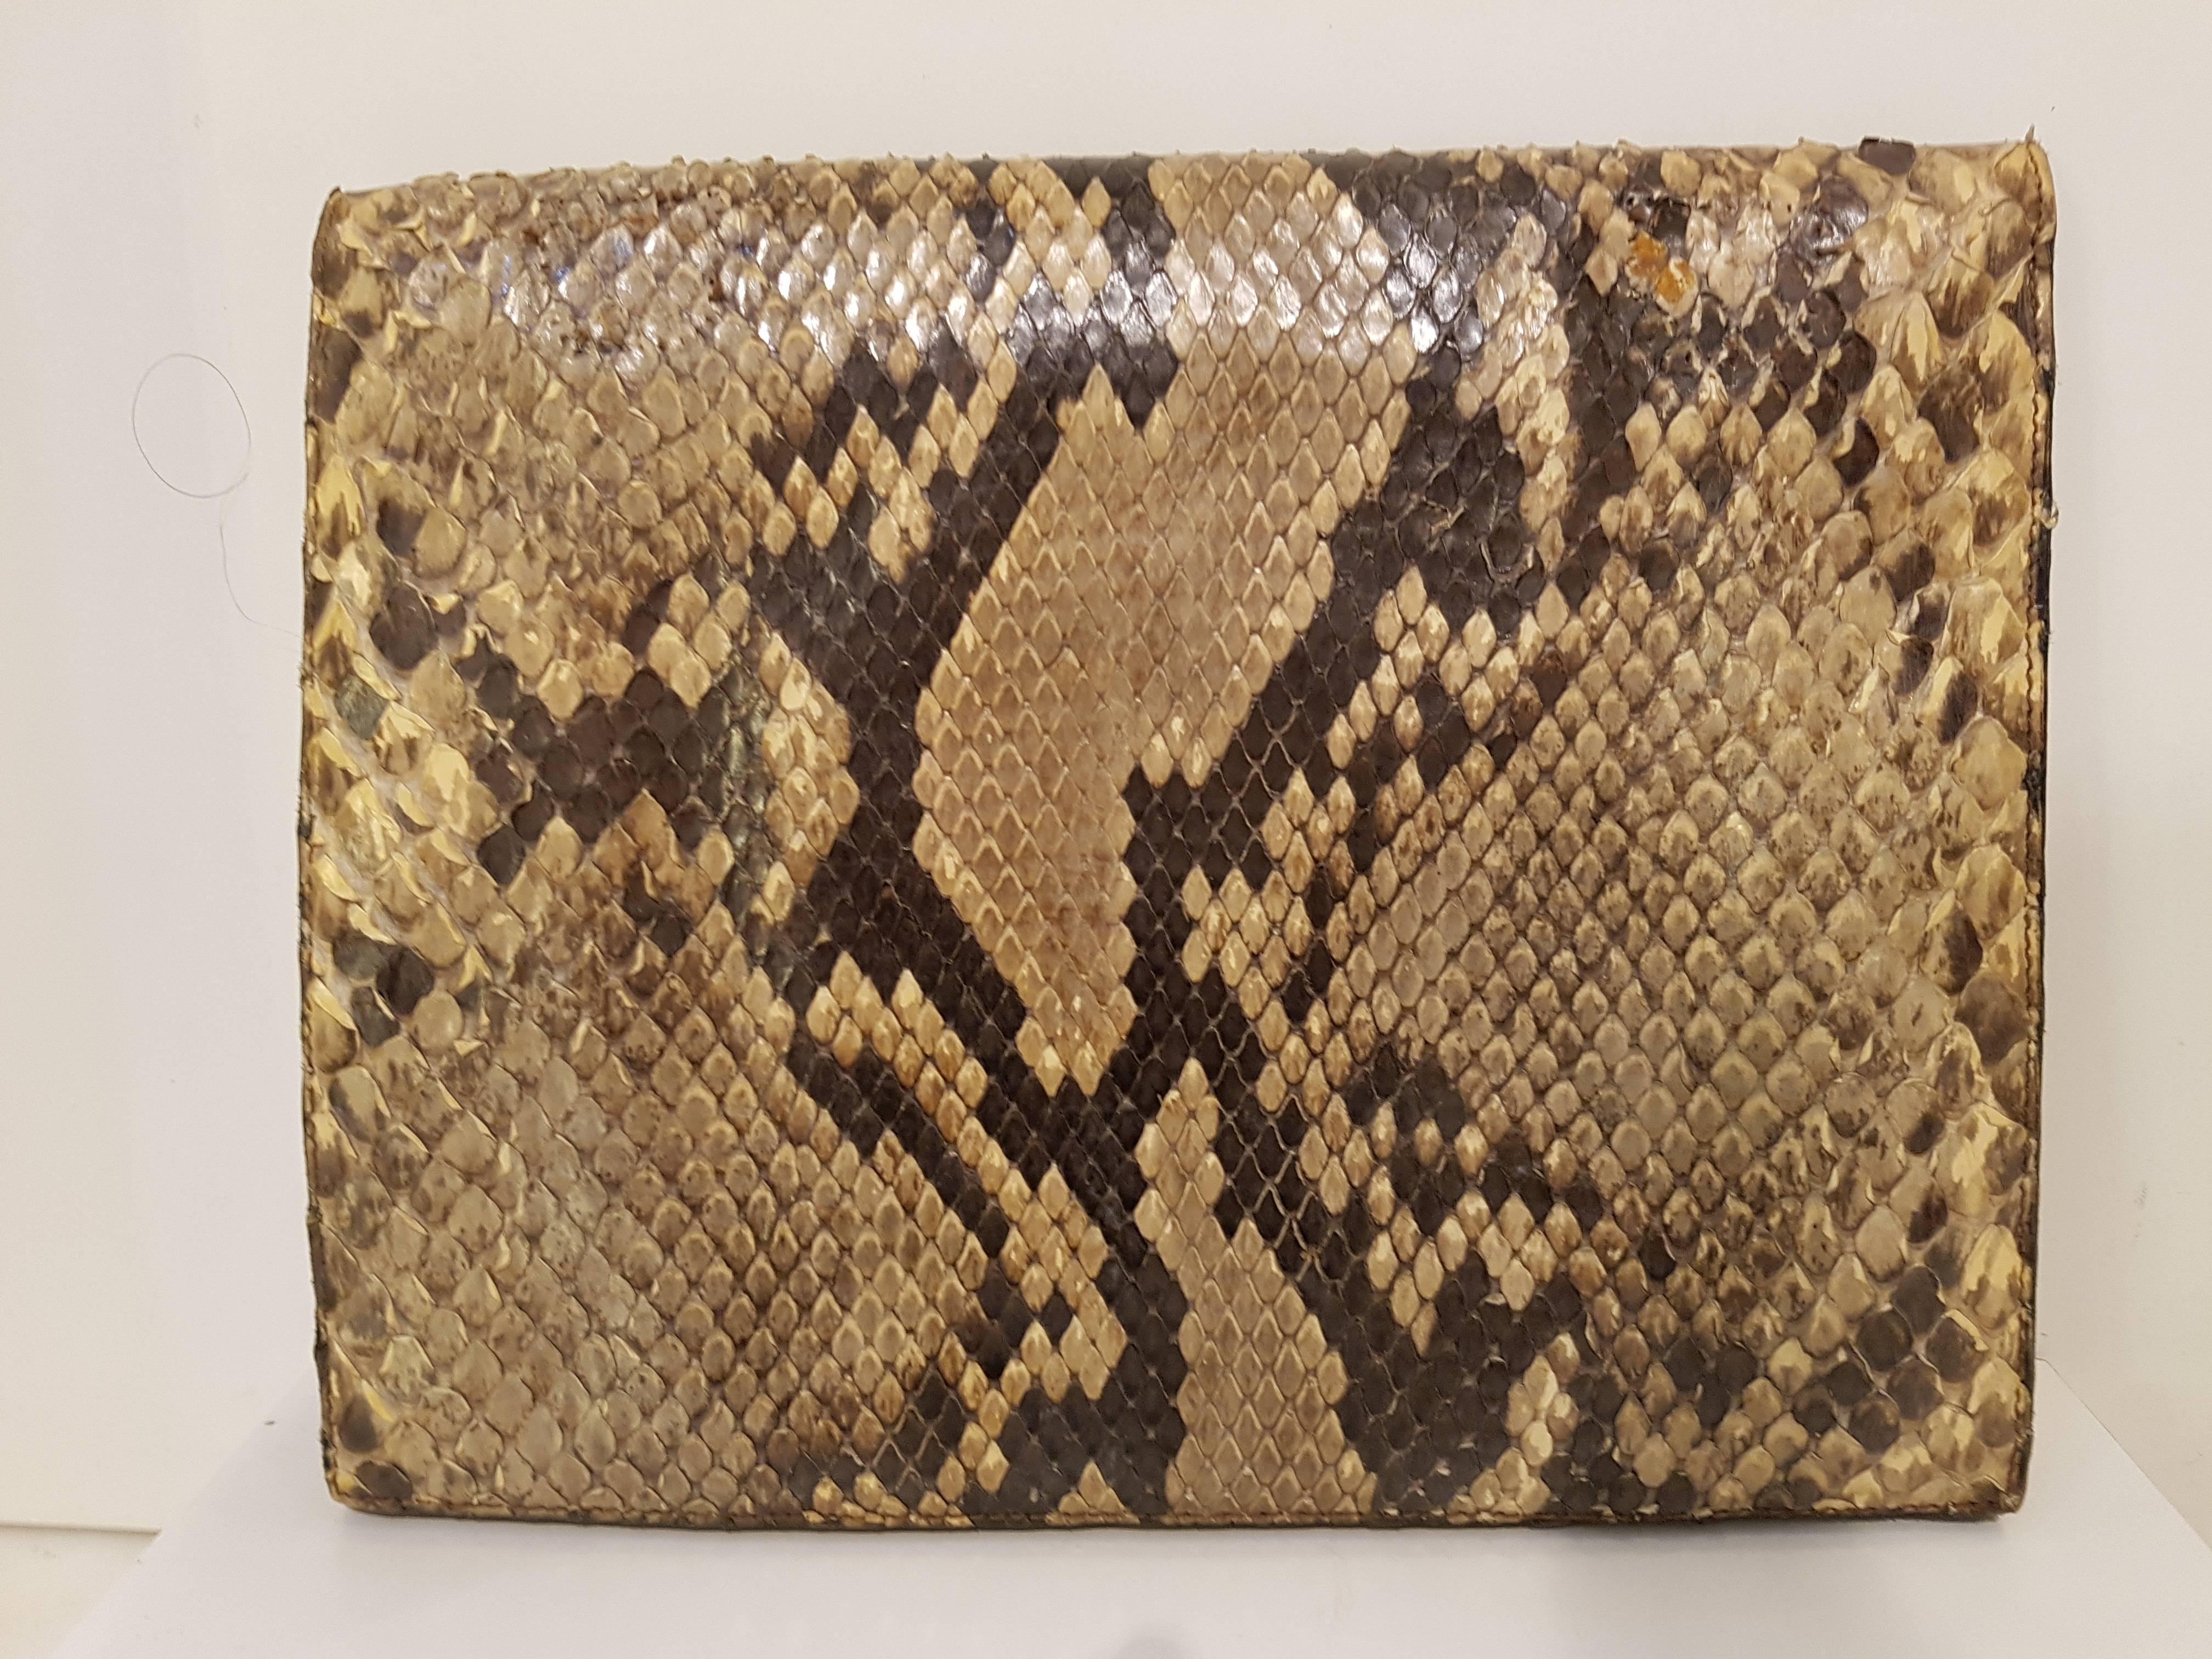 1980s Fendi python skin bag pochette
Amazing and rare bag
